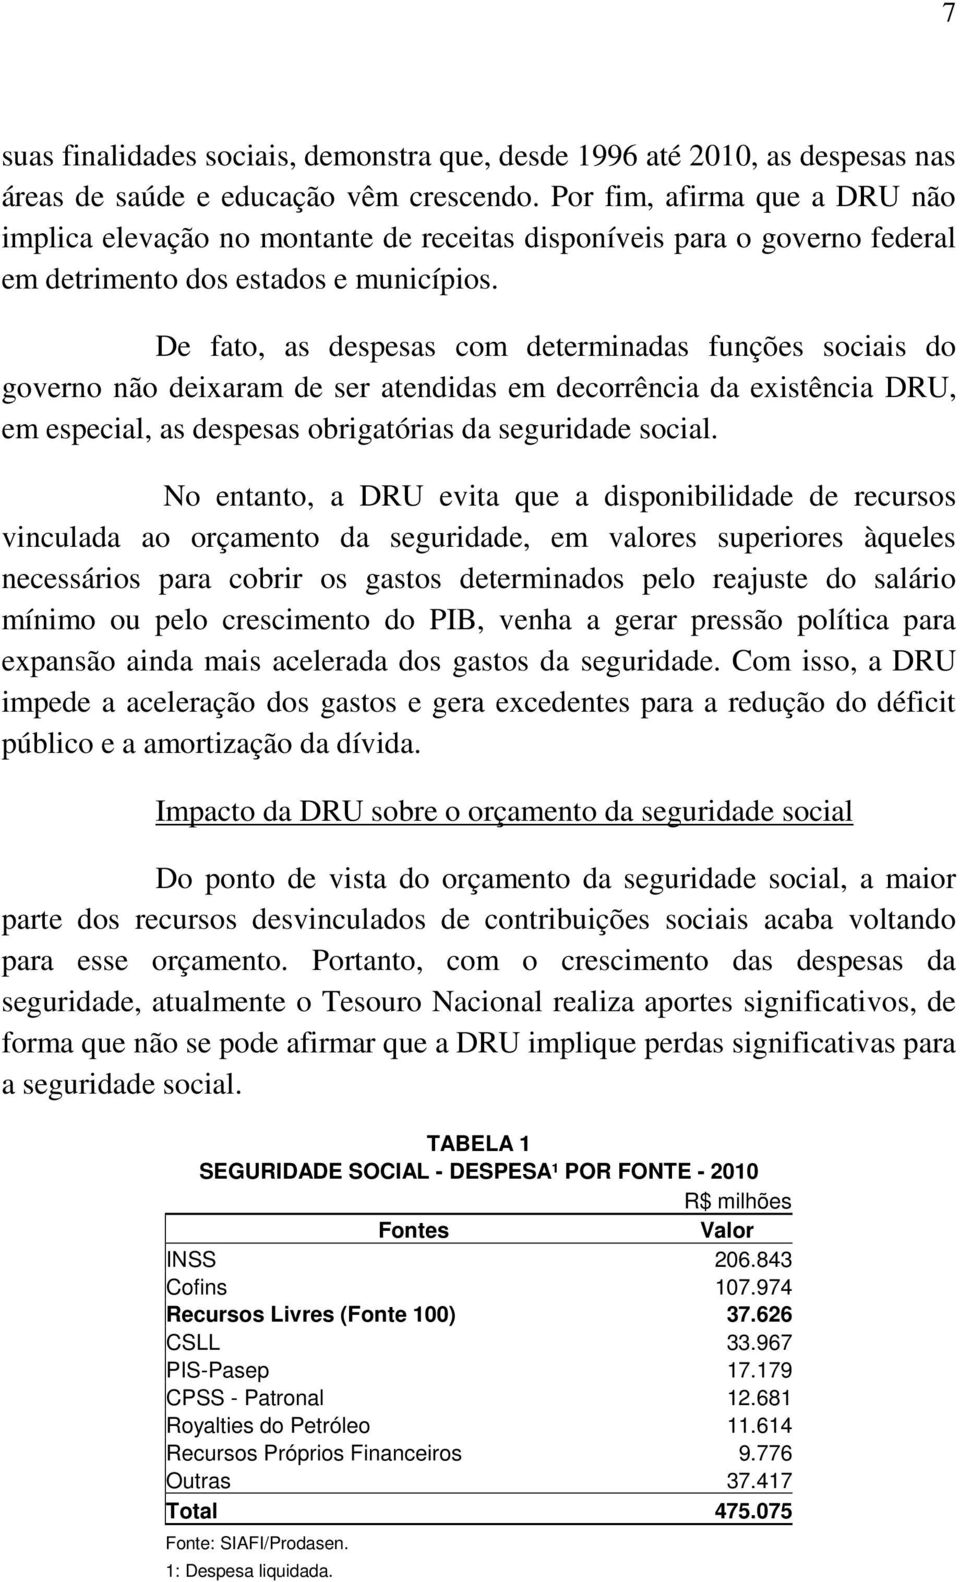 De fato, as despesas com determinadas funções sociais do governo não deixaram de ser atendidas em decorrência da existência DRU, em especial, as despesas obrigatórias da seguridade social.